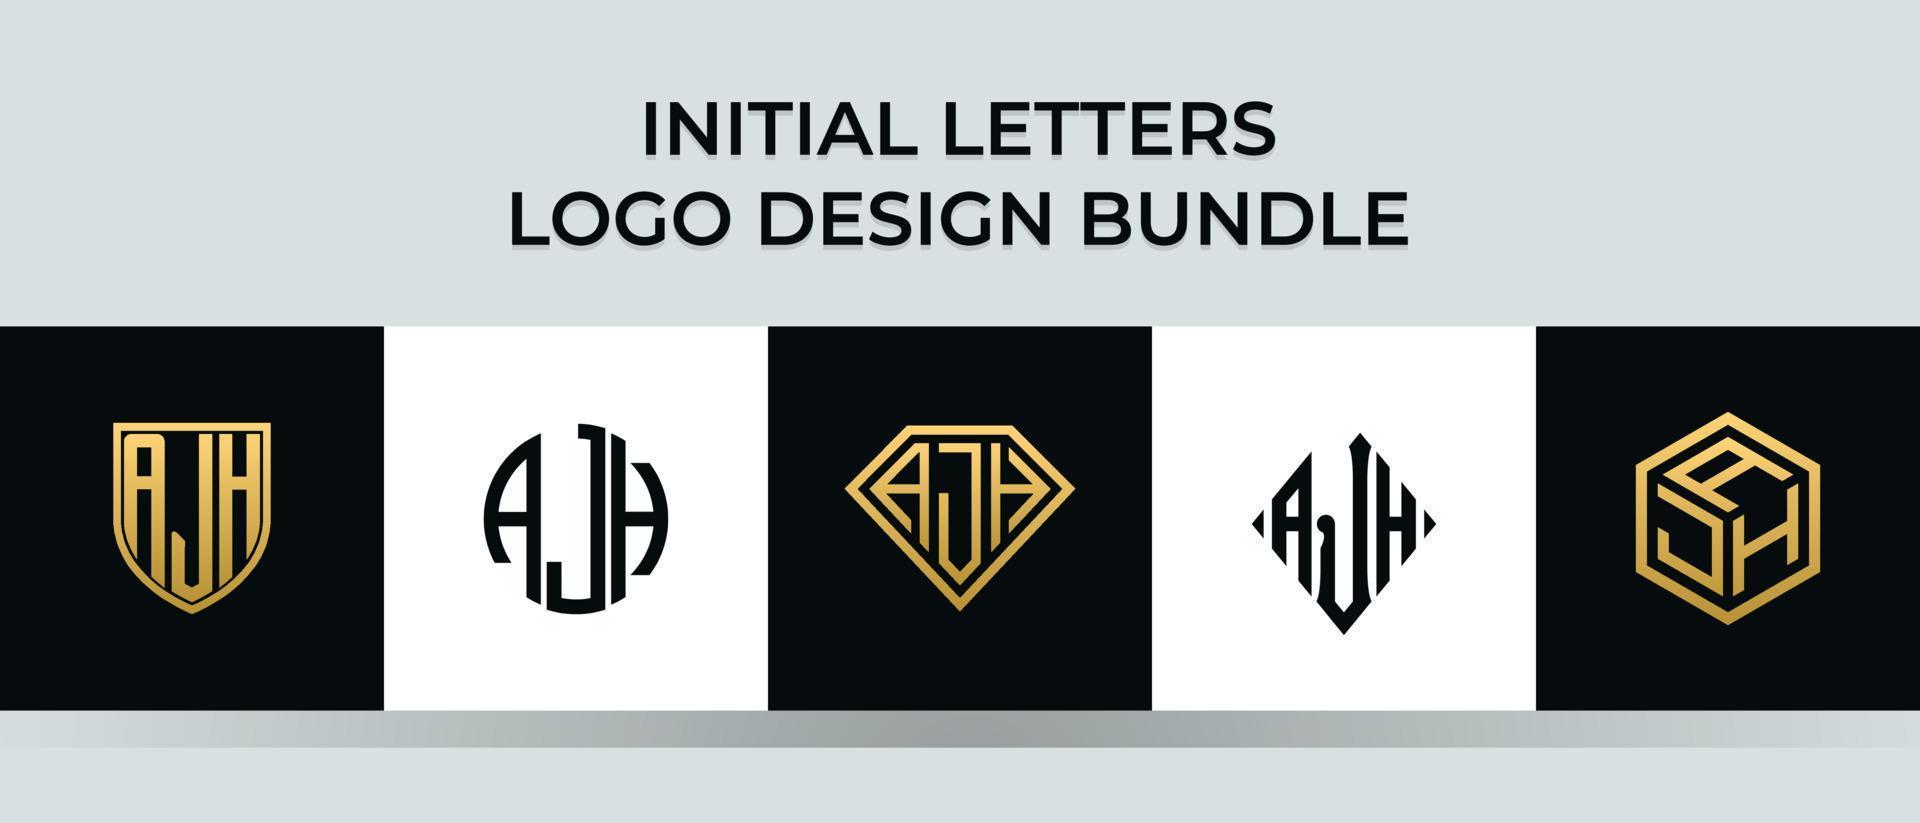 lettere iniziali ajh logo design bundle vettore